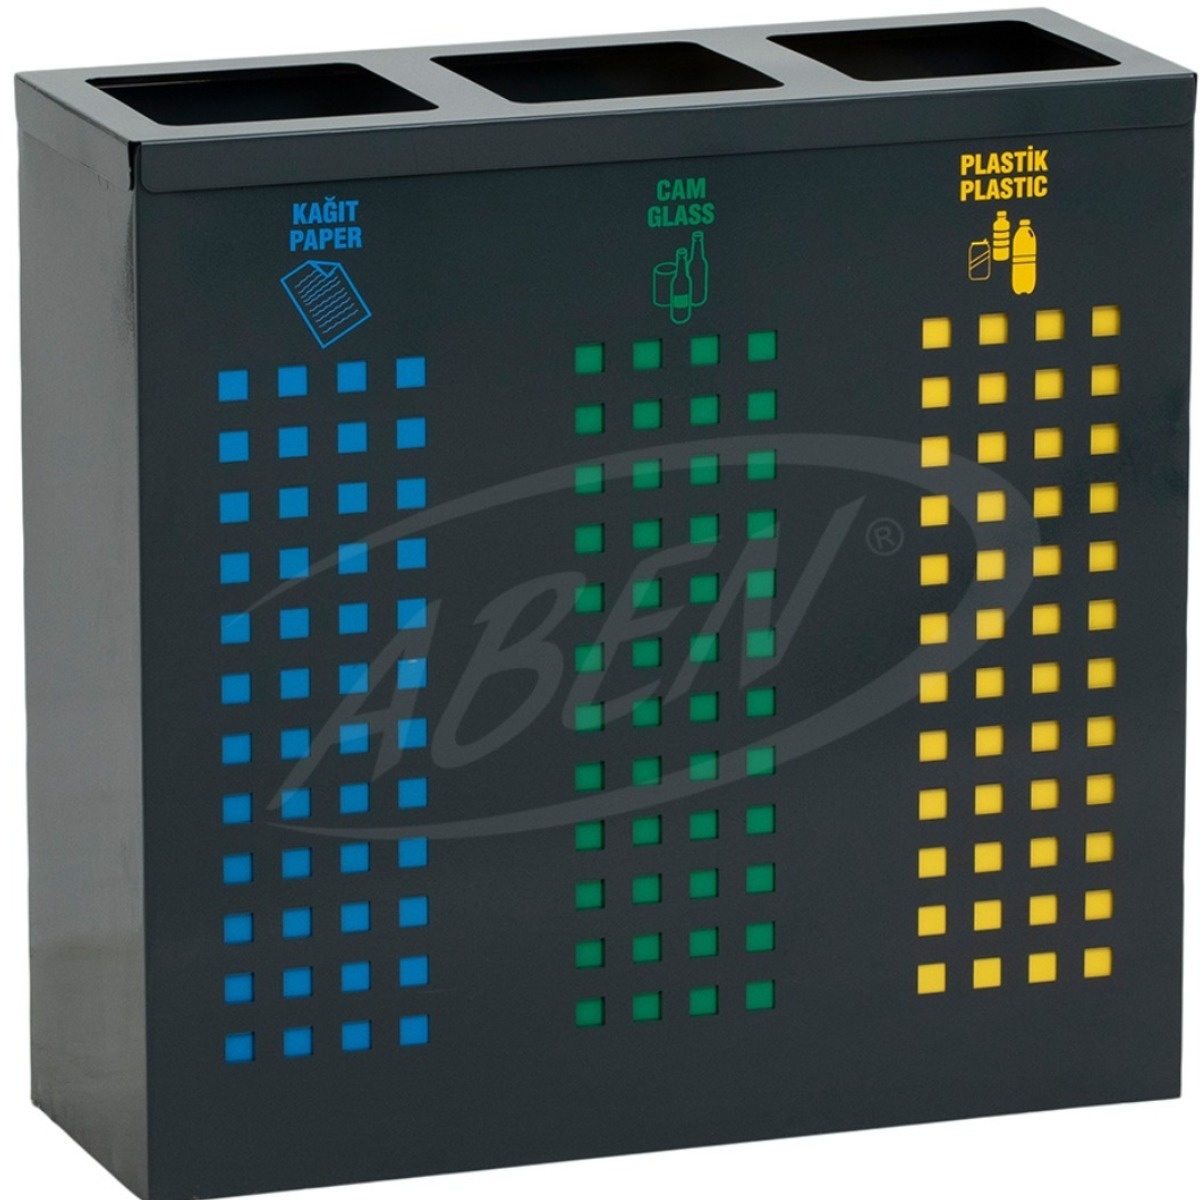 AB-723 3'Part Recycle Bin adlı ürünün logosu